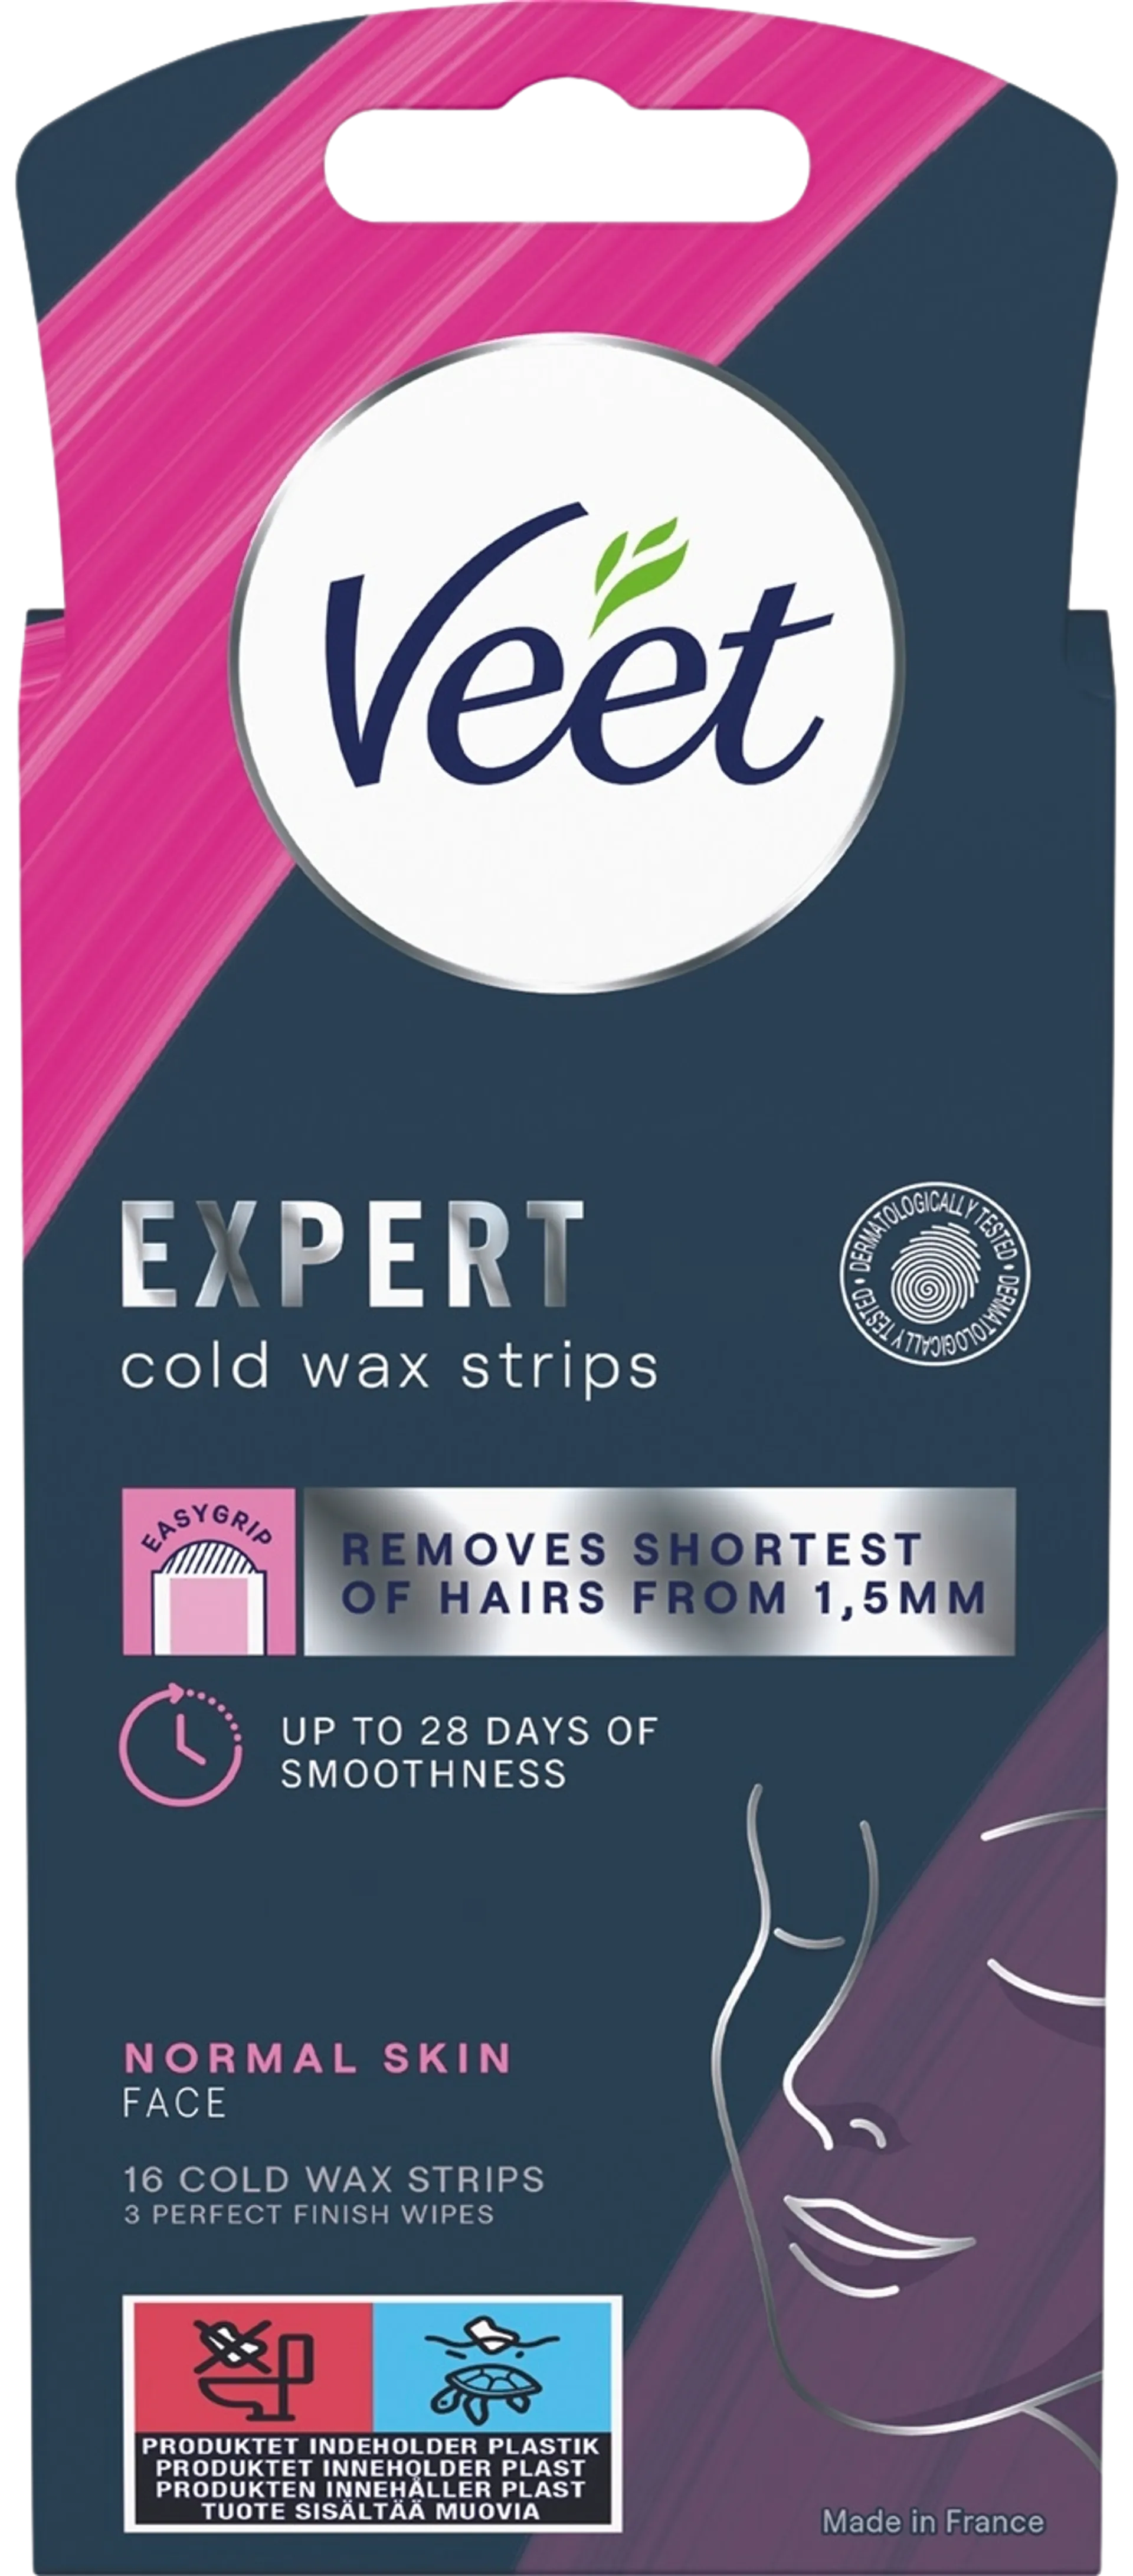 Veet Expert Cold Wax Strips face normal skin 16pcs